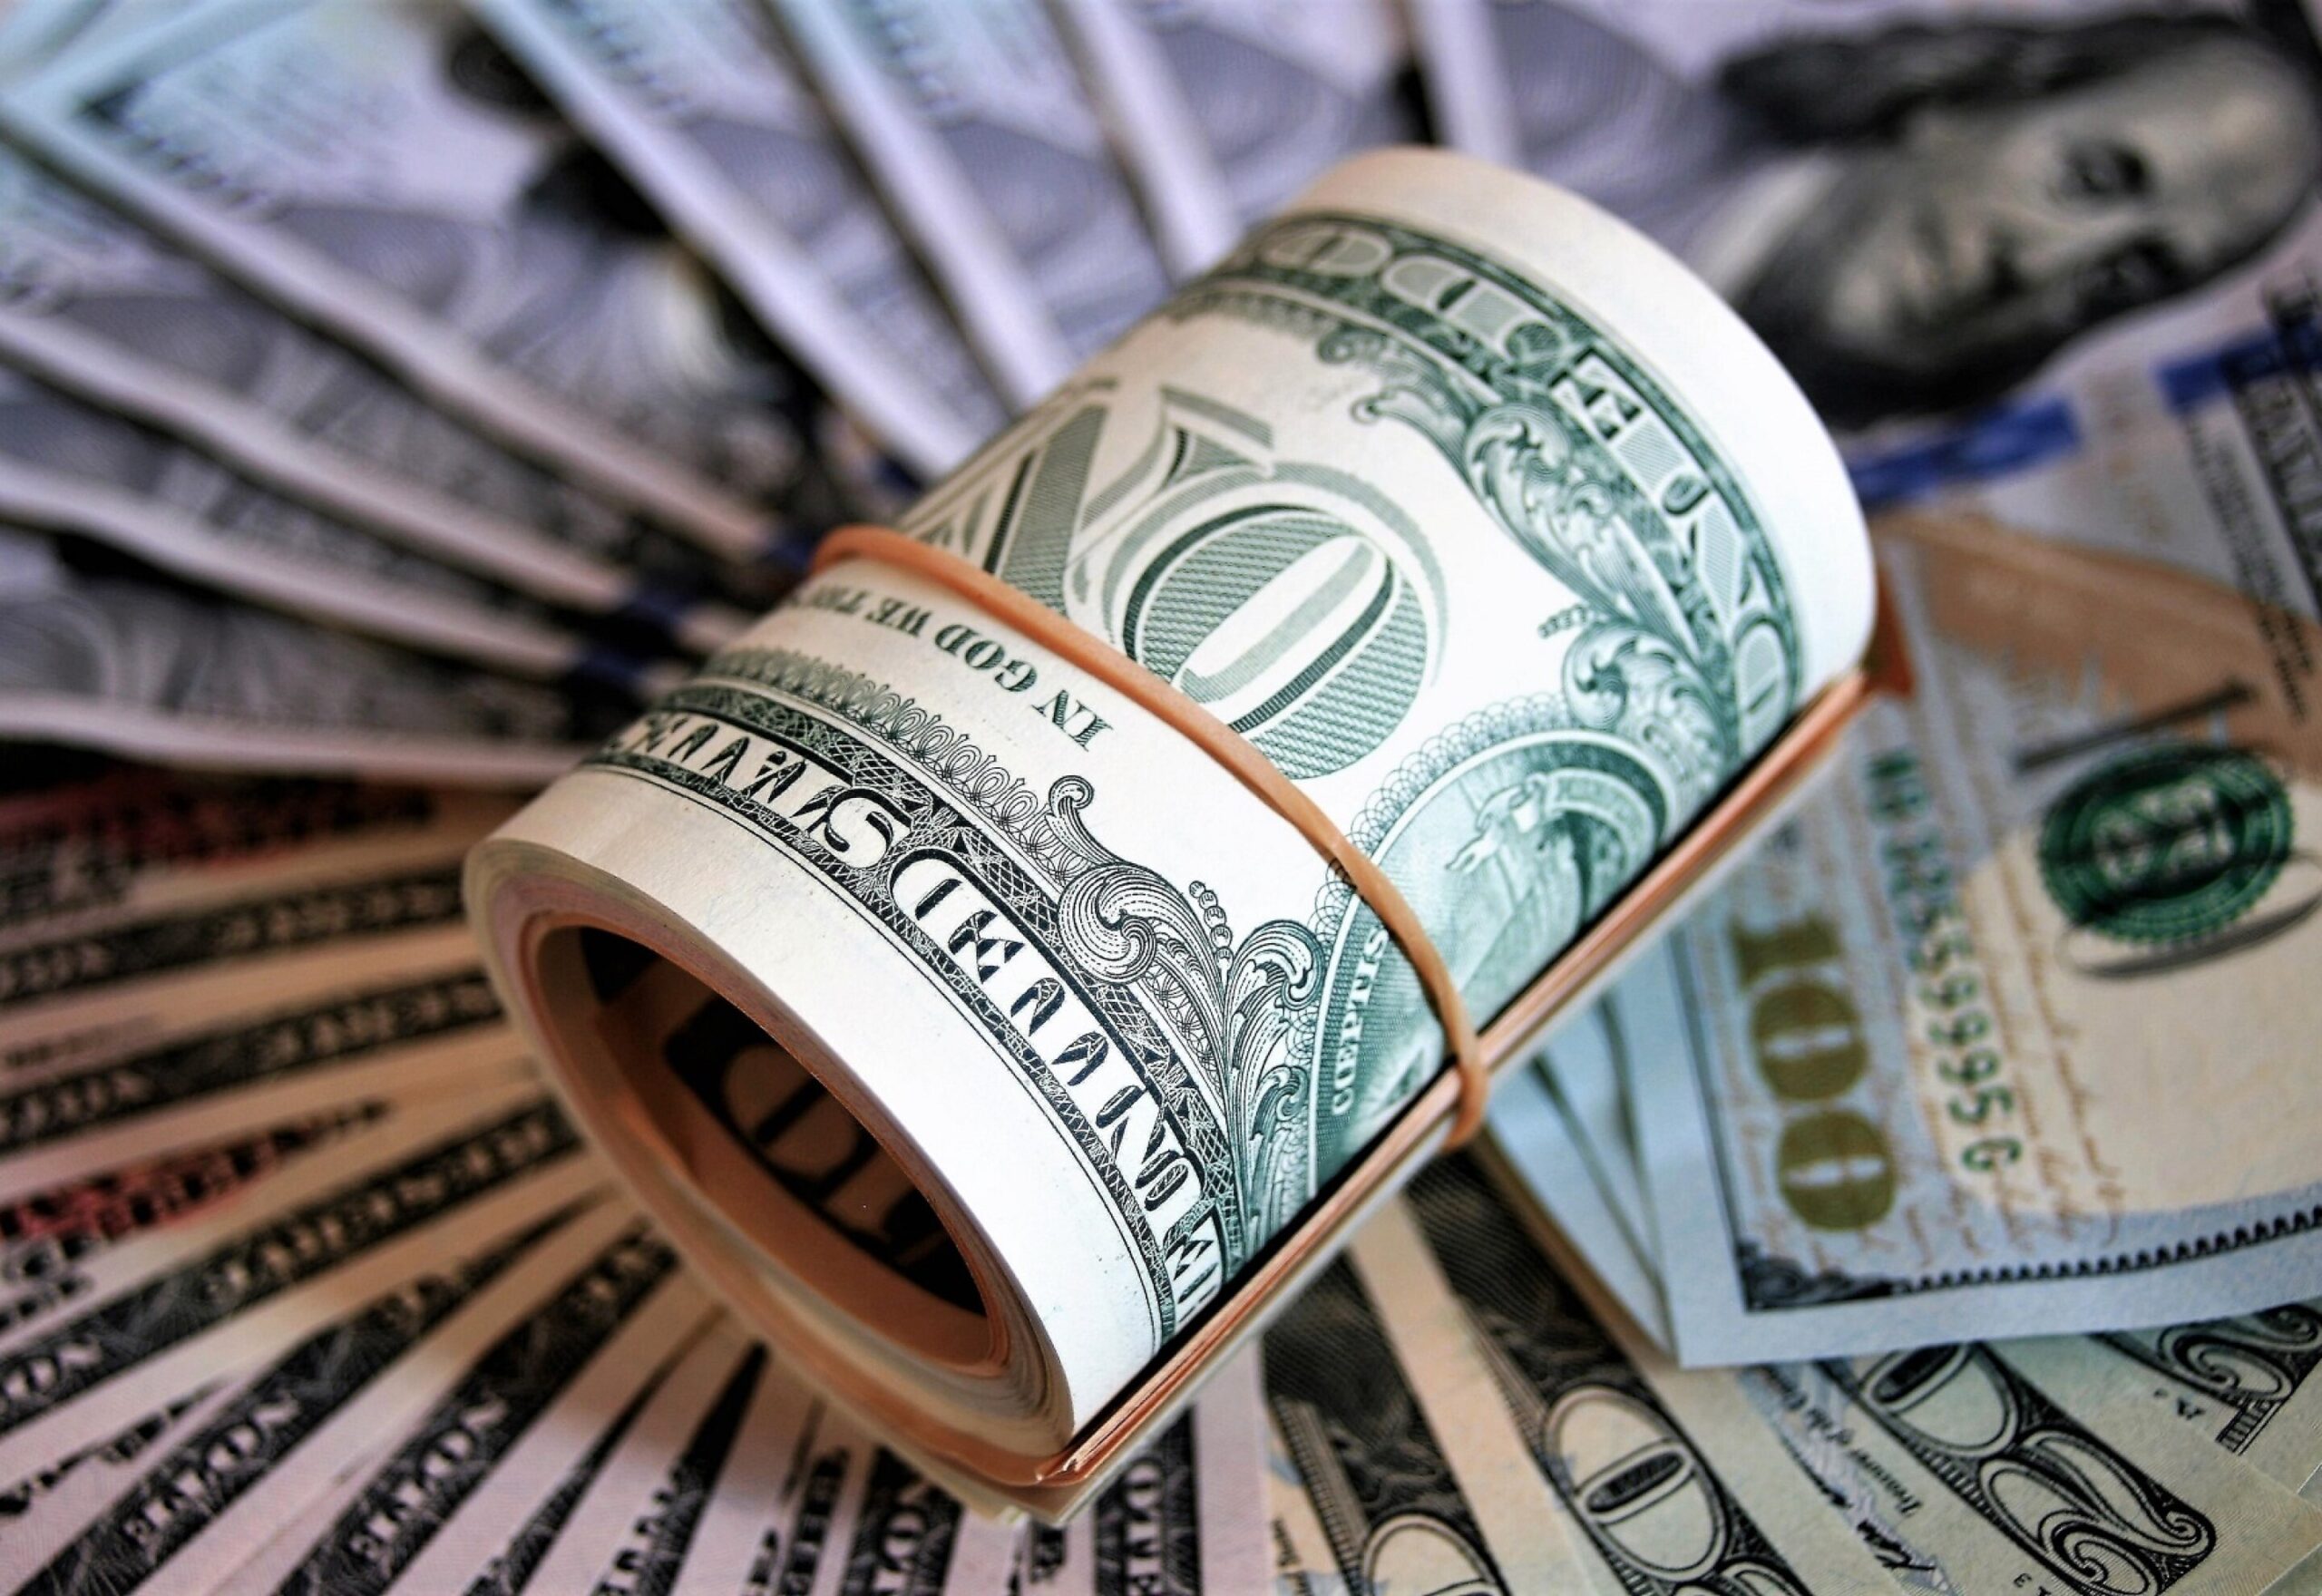 El dólar en Uruguay acumula cinco subas consecutivas, llega al mayor valor en un mes y casi alcanza “techo” de $ 40